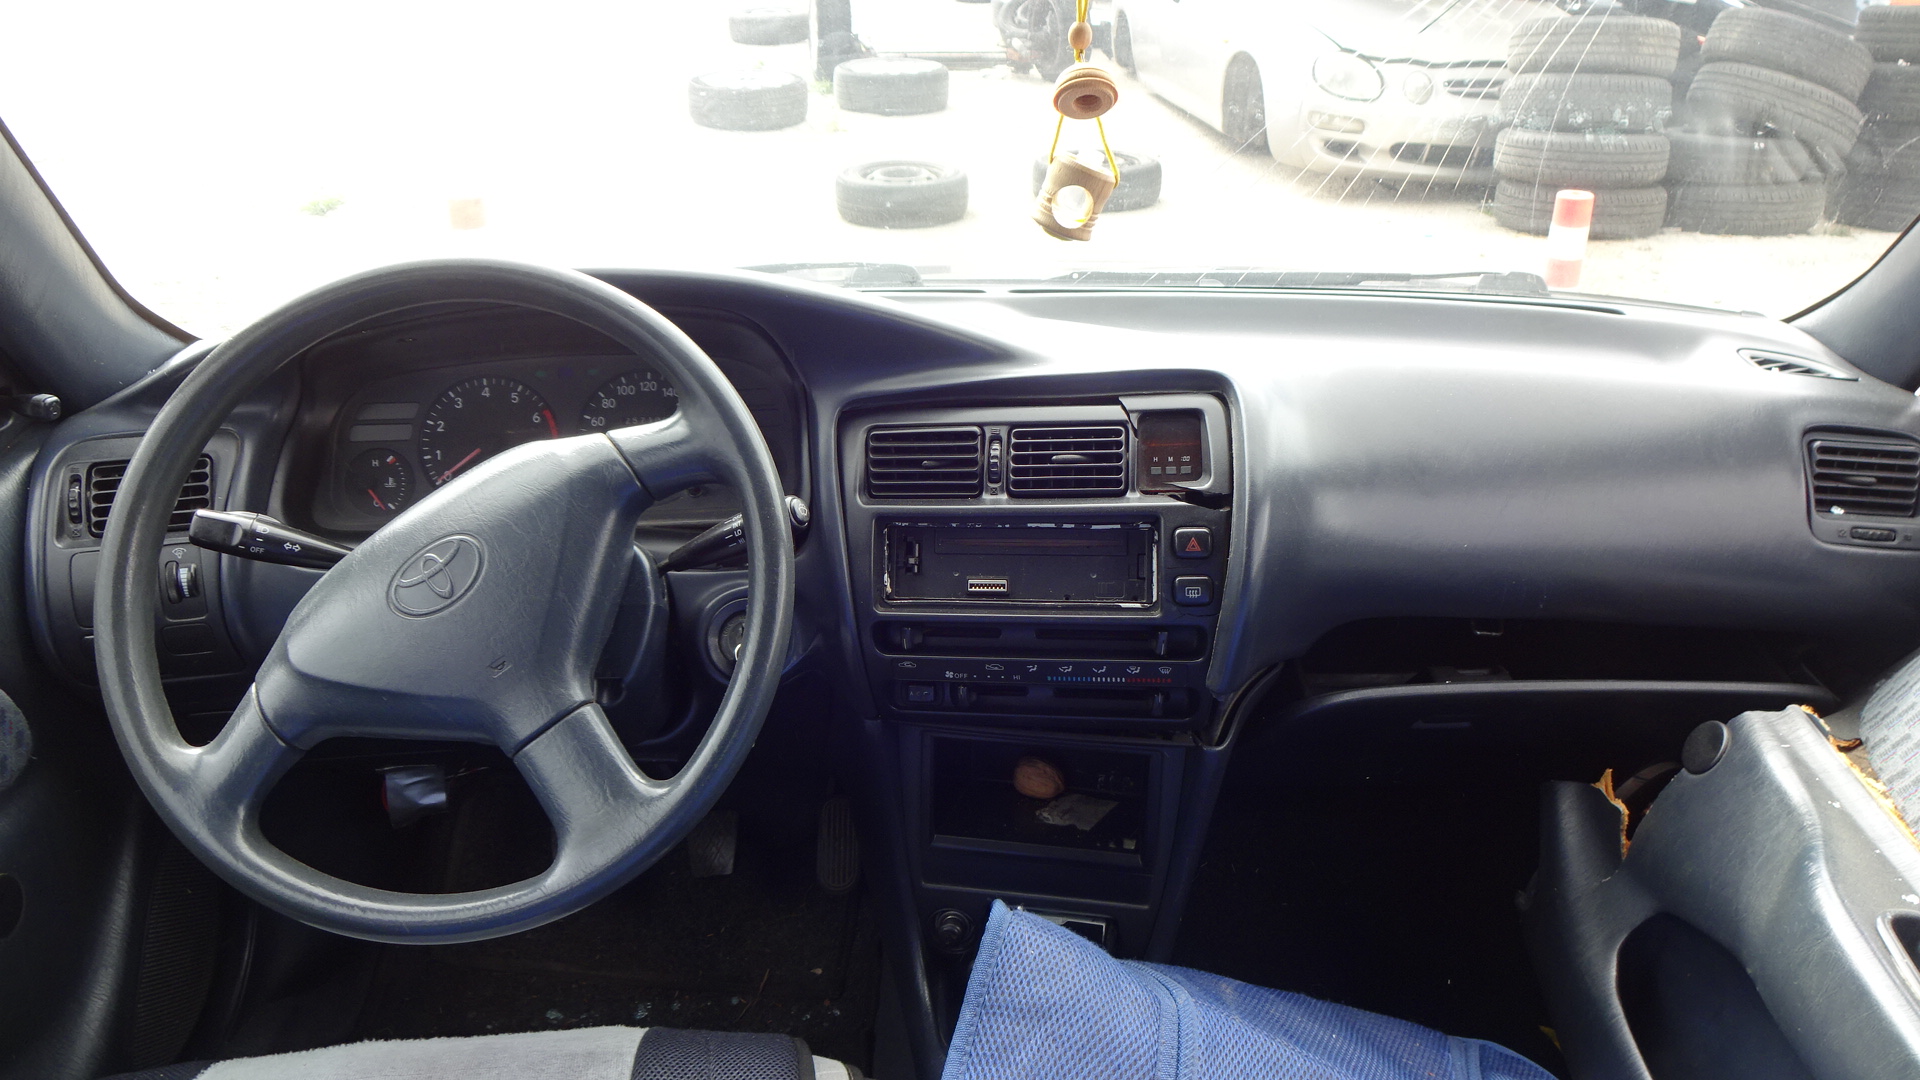 Προφυλακτήρας Εμπρός Toyota  Corolla ’97 Προσφορά.